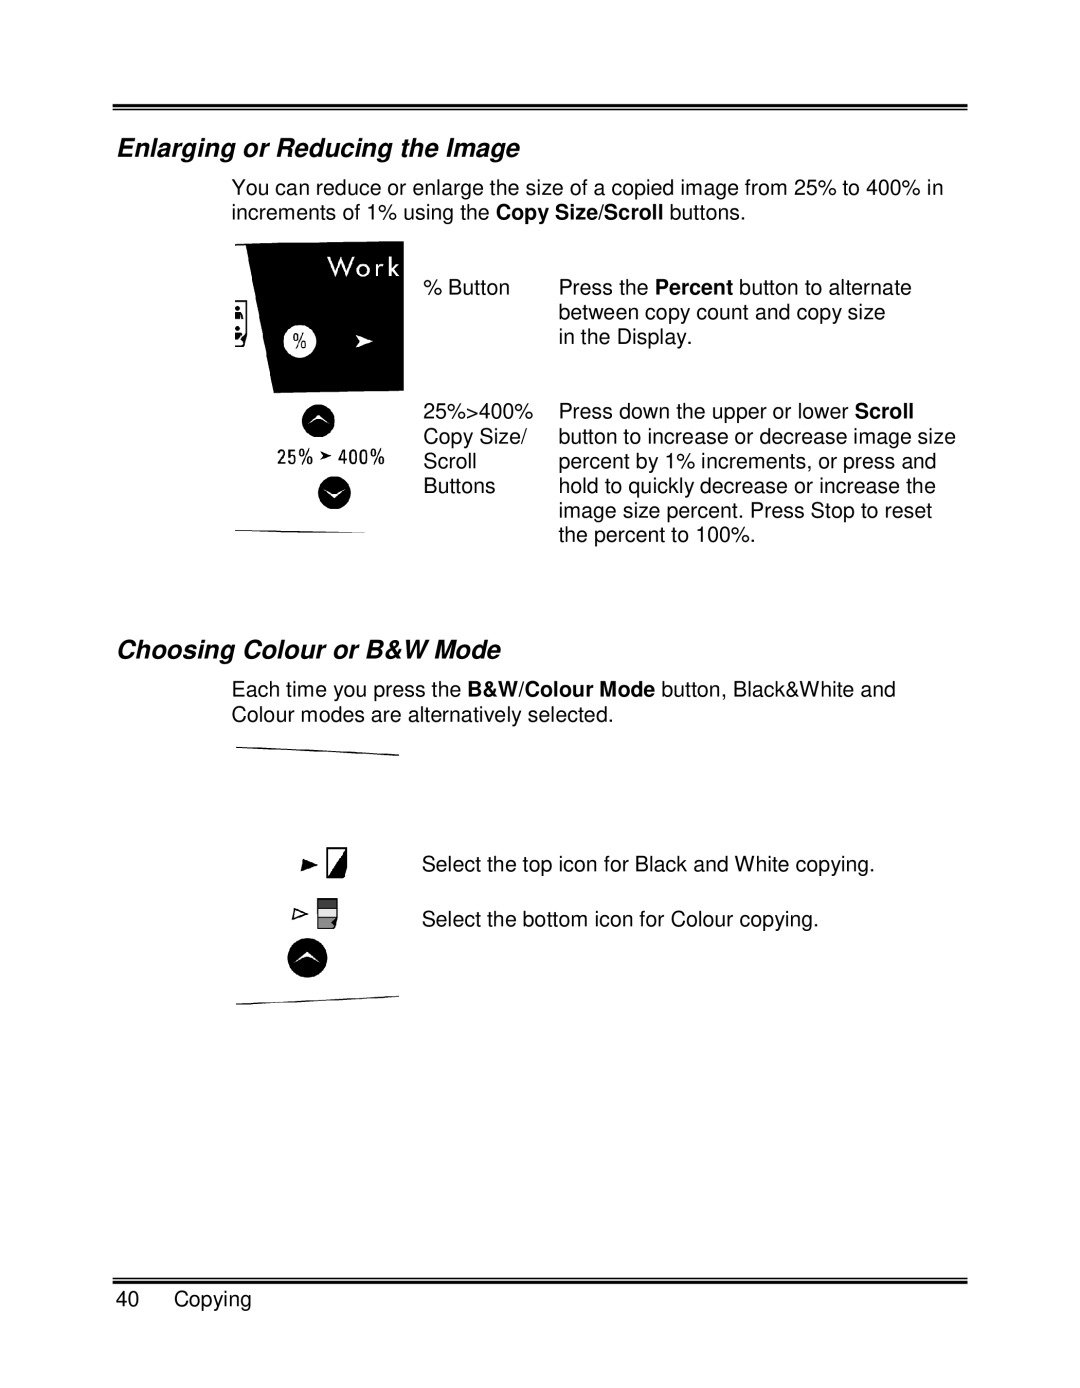 Xerox XK25C, XK35C manual Enlarging or Reducing the Image, Choosing Colour or B&W Mode 